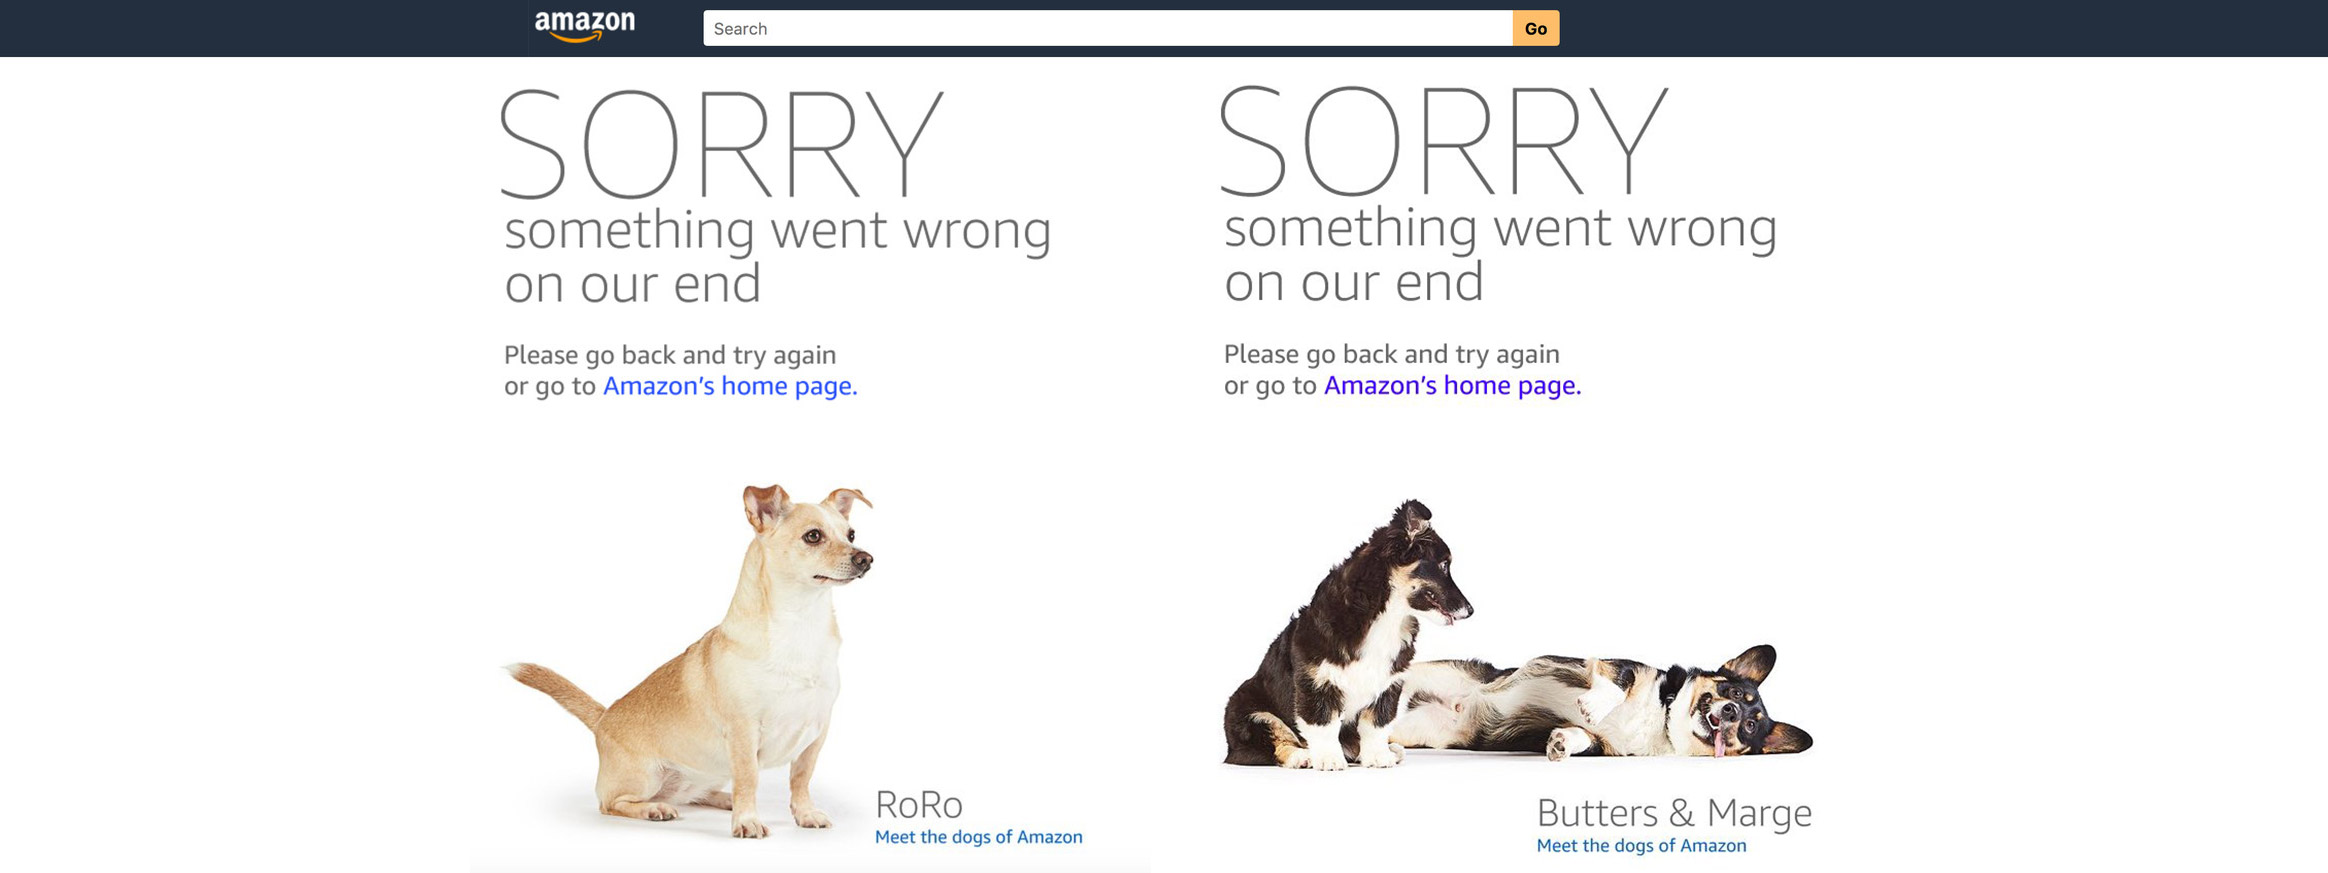 Web bị sập, Amazon sử dụng những chú chó dễ thương làm thông báo lỗi